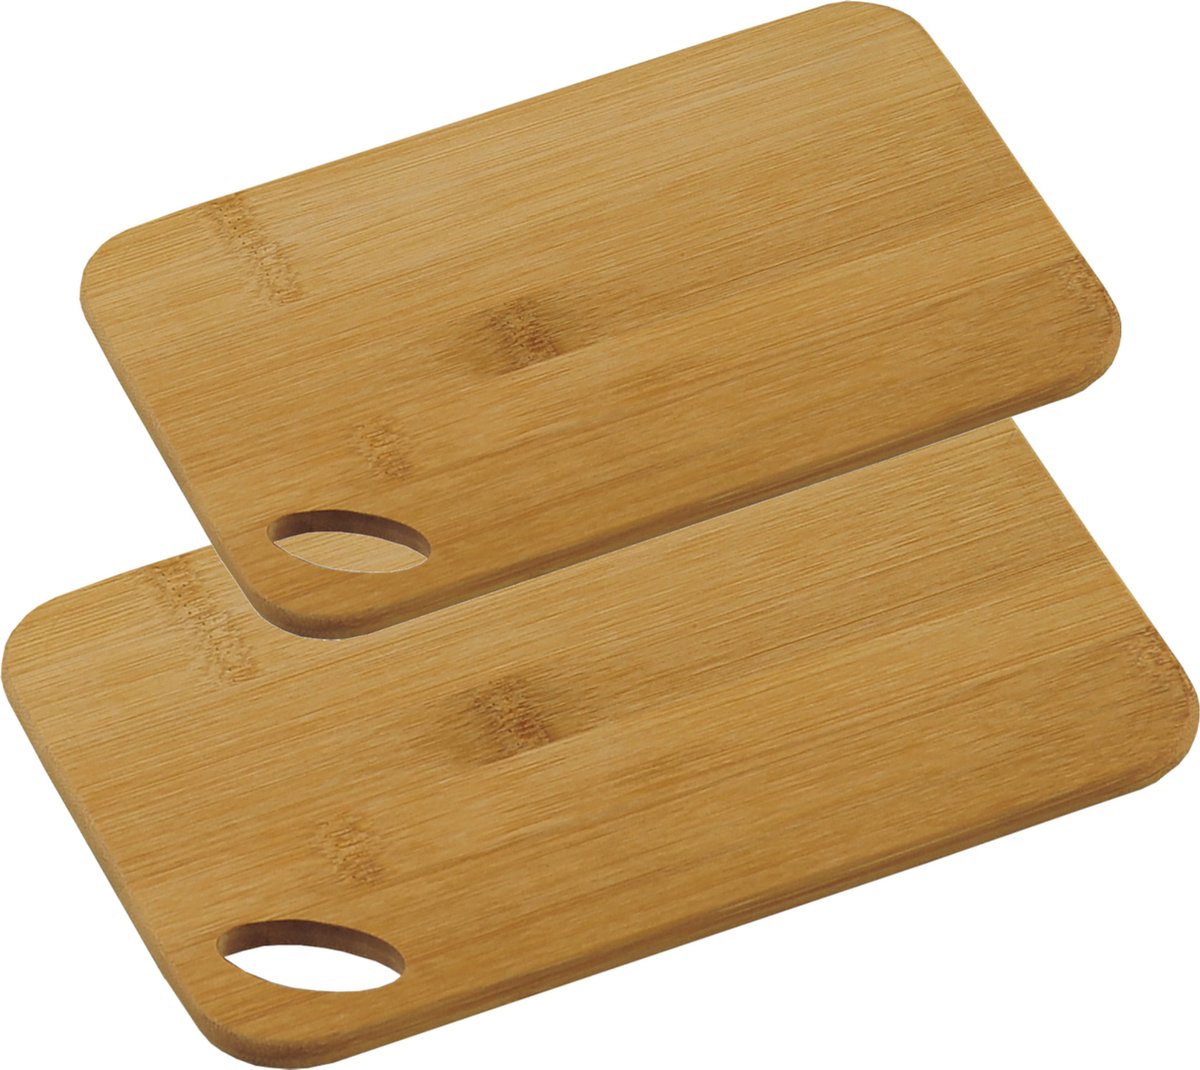 Bamboe houten snijplanken voordeel set in 2 verschillende formaten - 21 x 22 cm en 24 x 35 cm